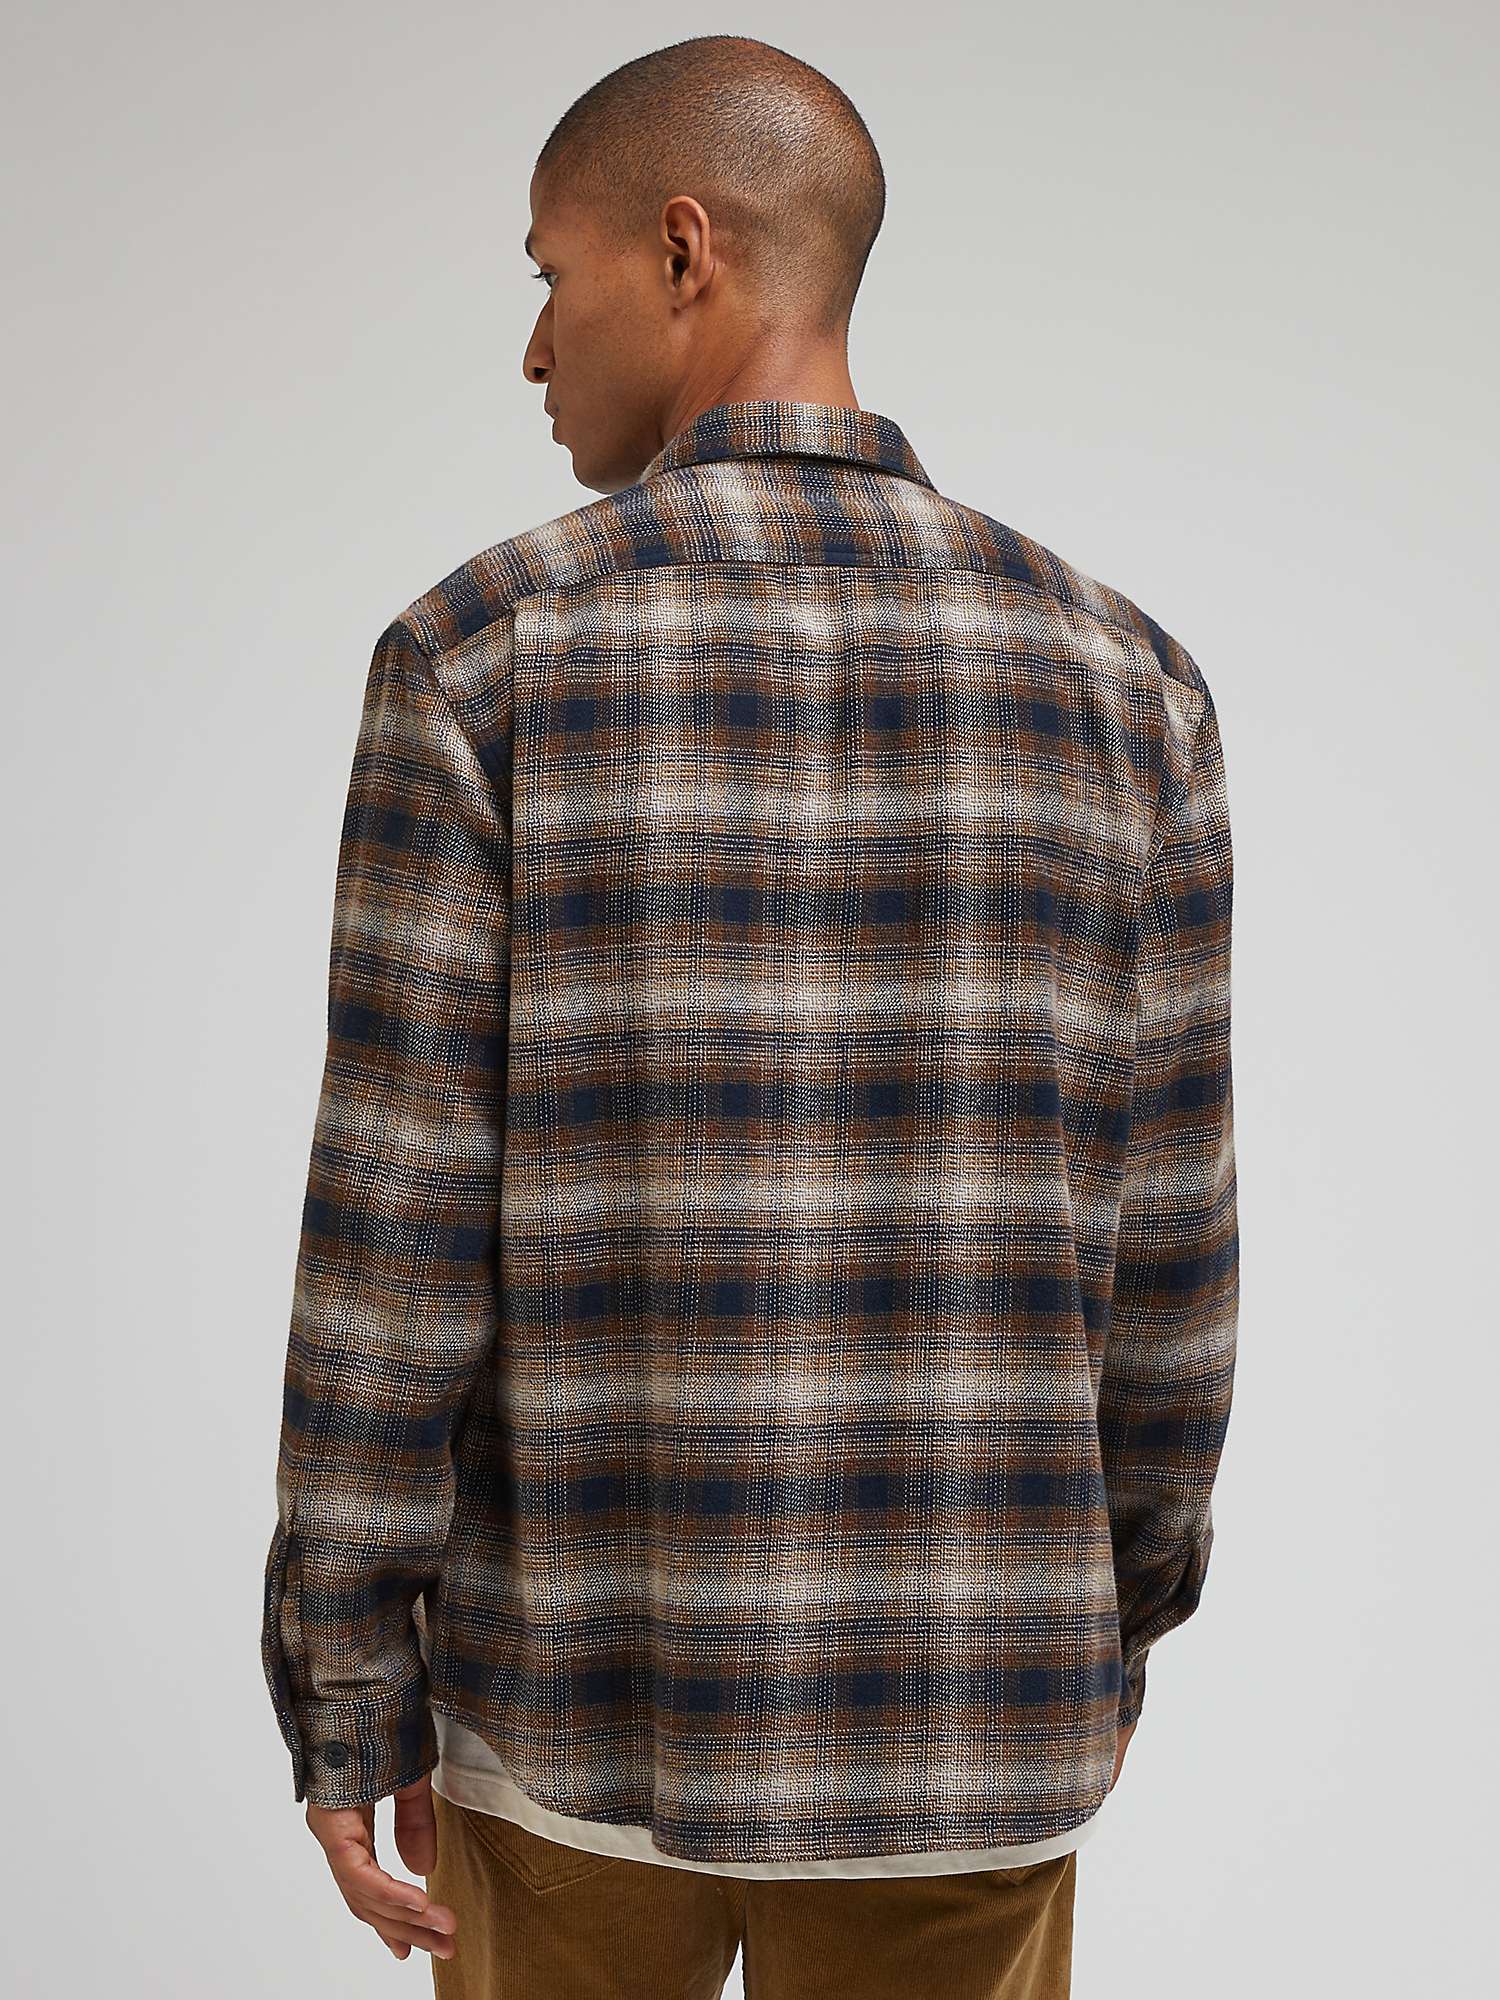 Buy Lee Worker Long Sleeve Shirt, Brown/Multi Online at johnlewis.com